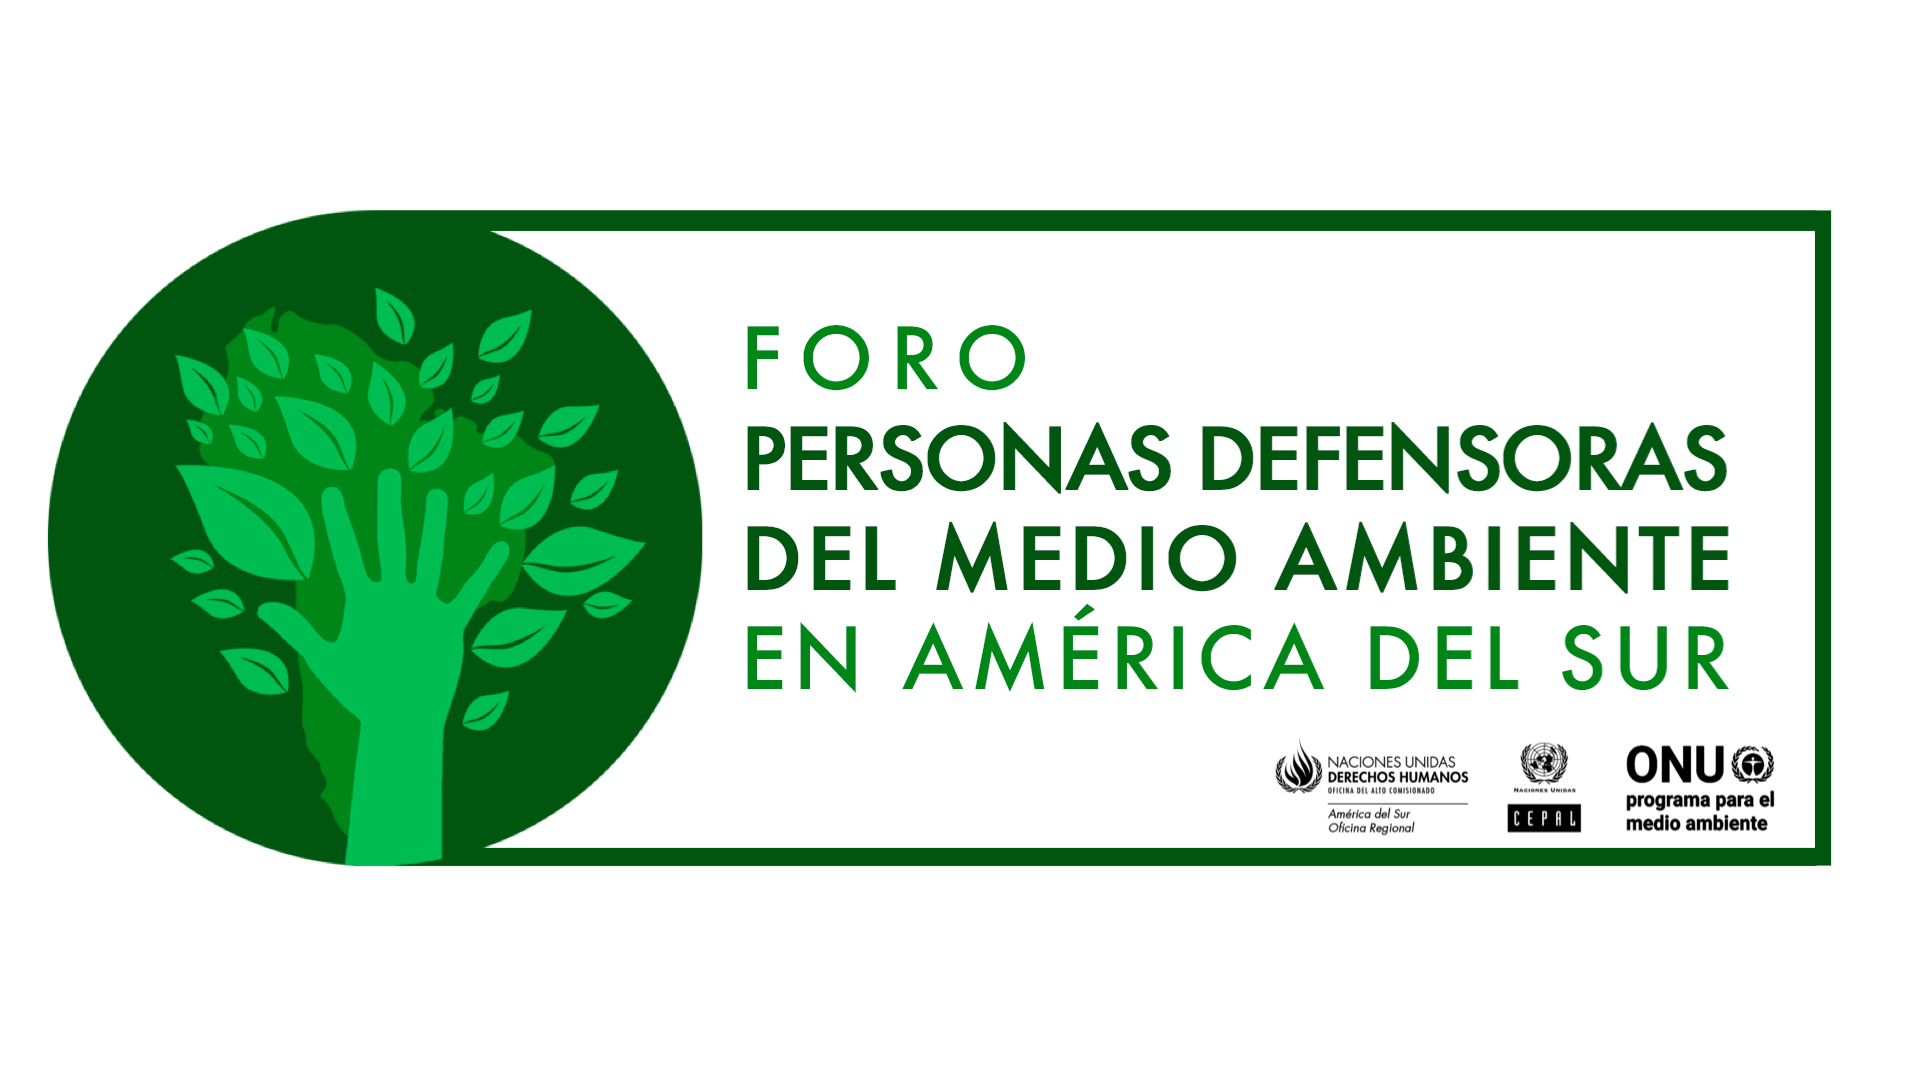 Foro abordó retos de defensores ambientales en América del Sur | Comisión  Económica para América Latina y el Caribe